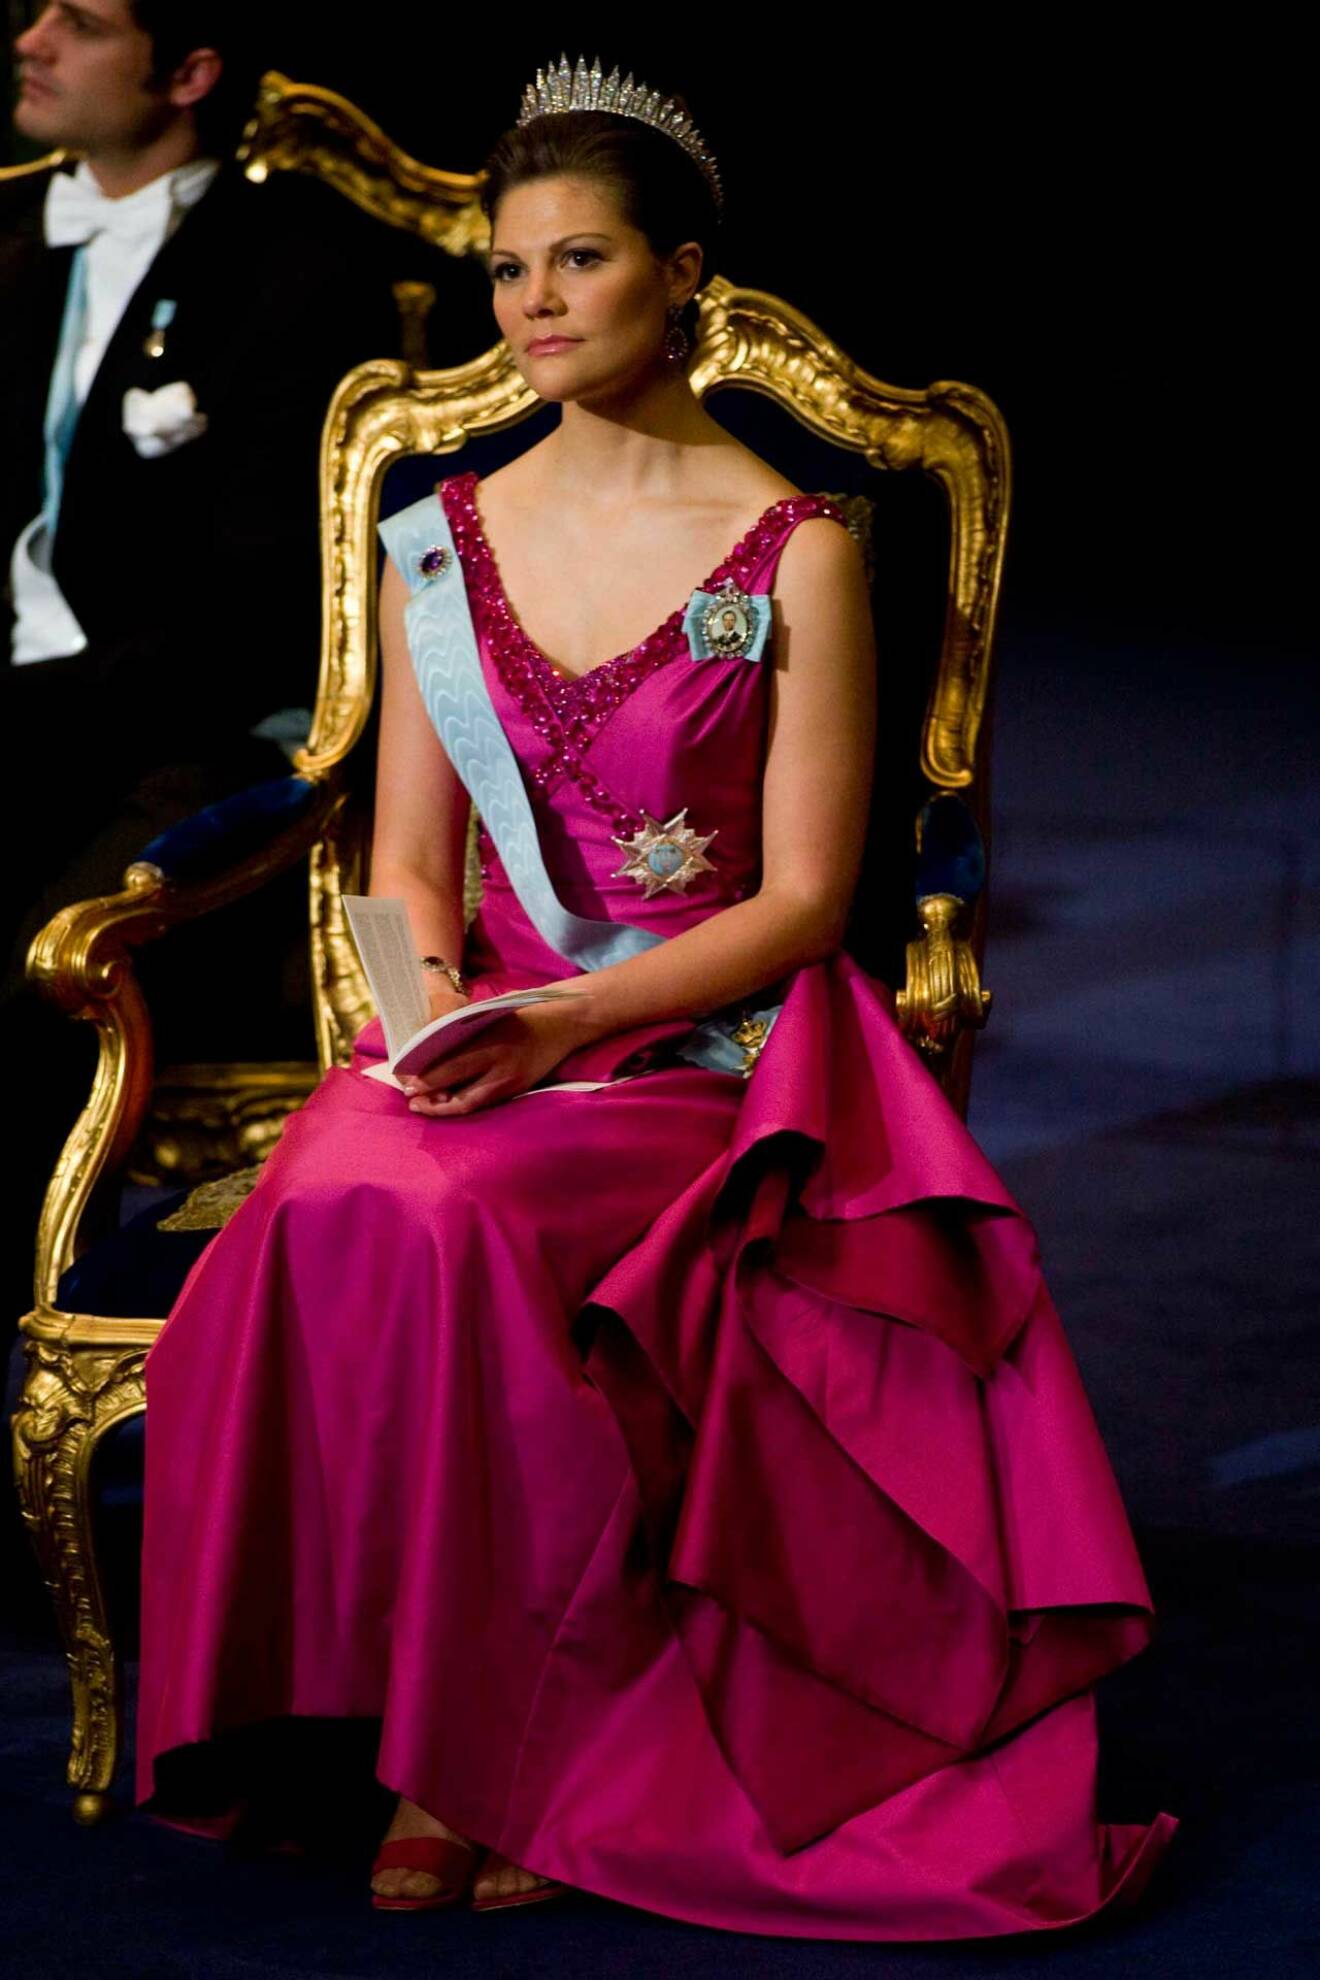 År 2008 bar kronprinsessan Victoria en rosa sidenklänning av Lars Wallin